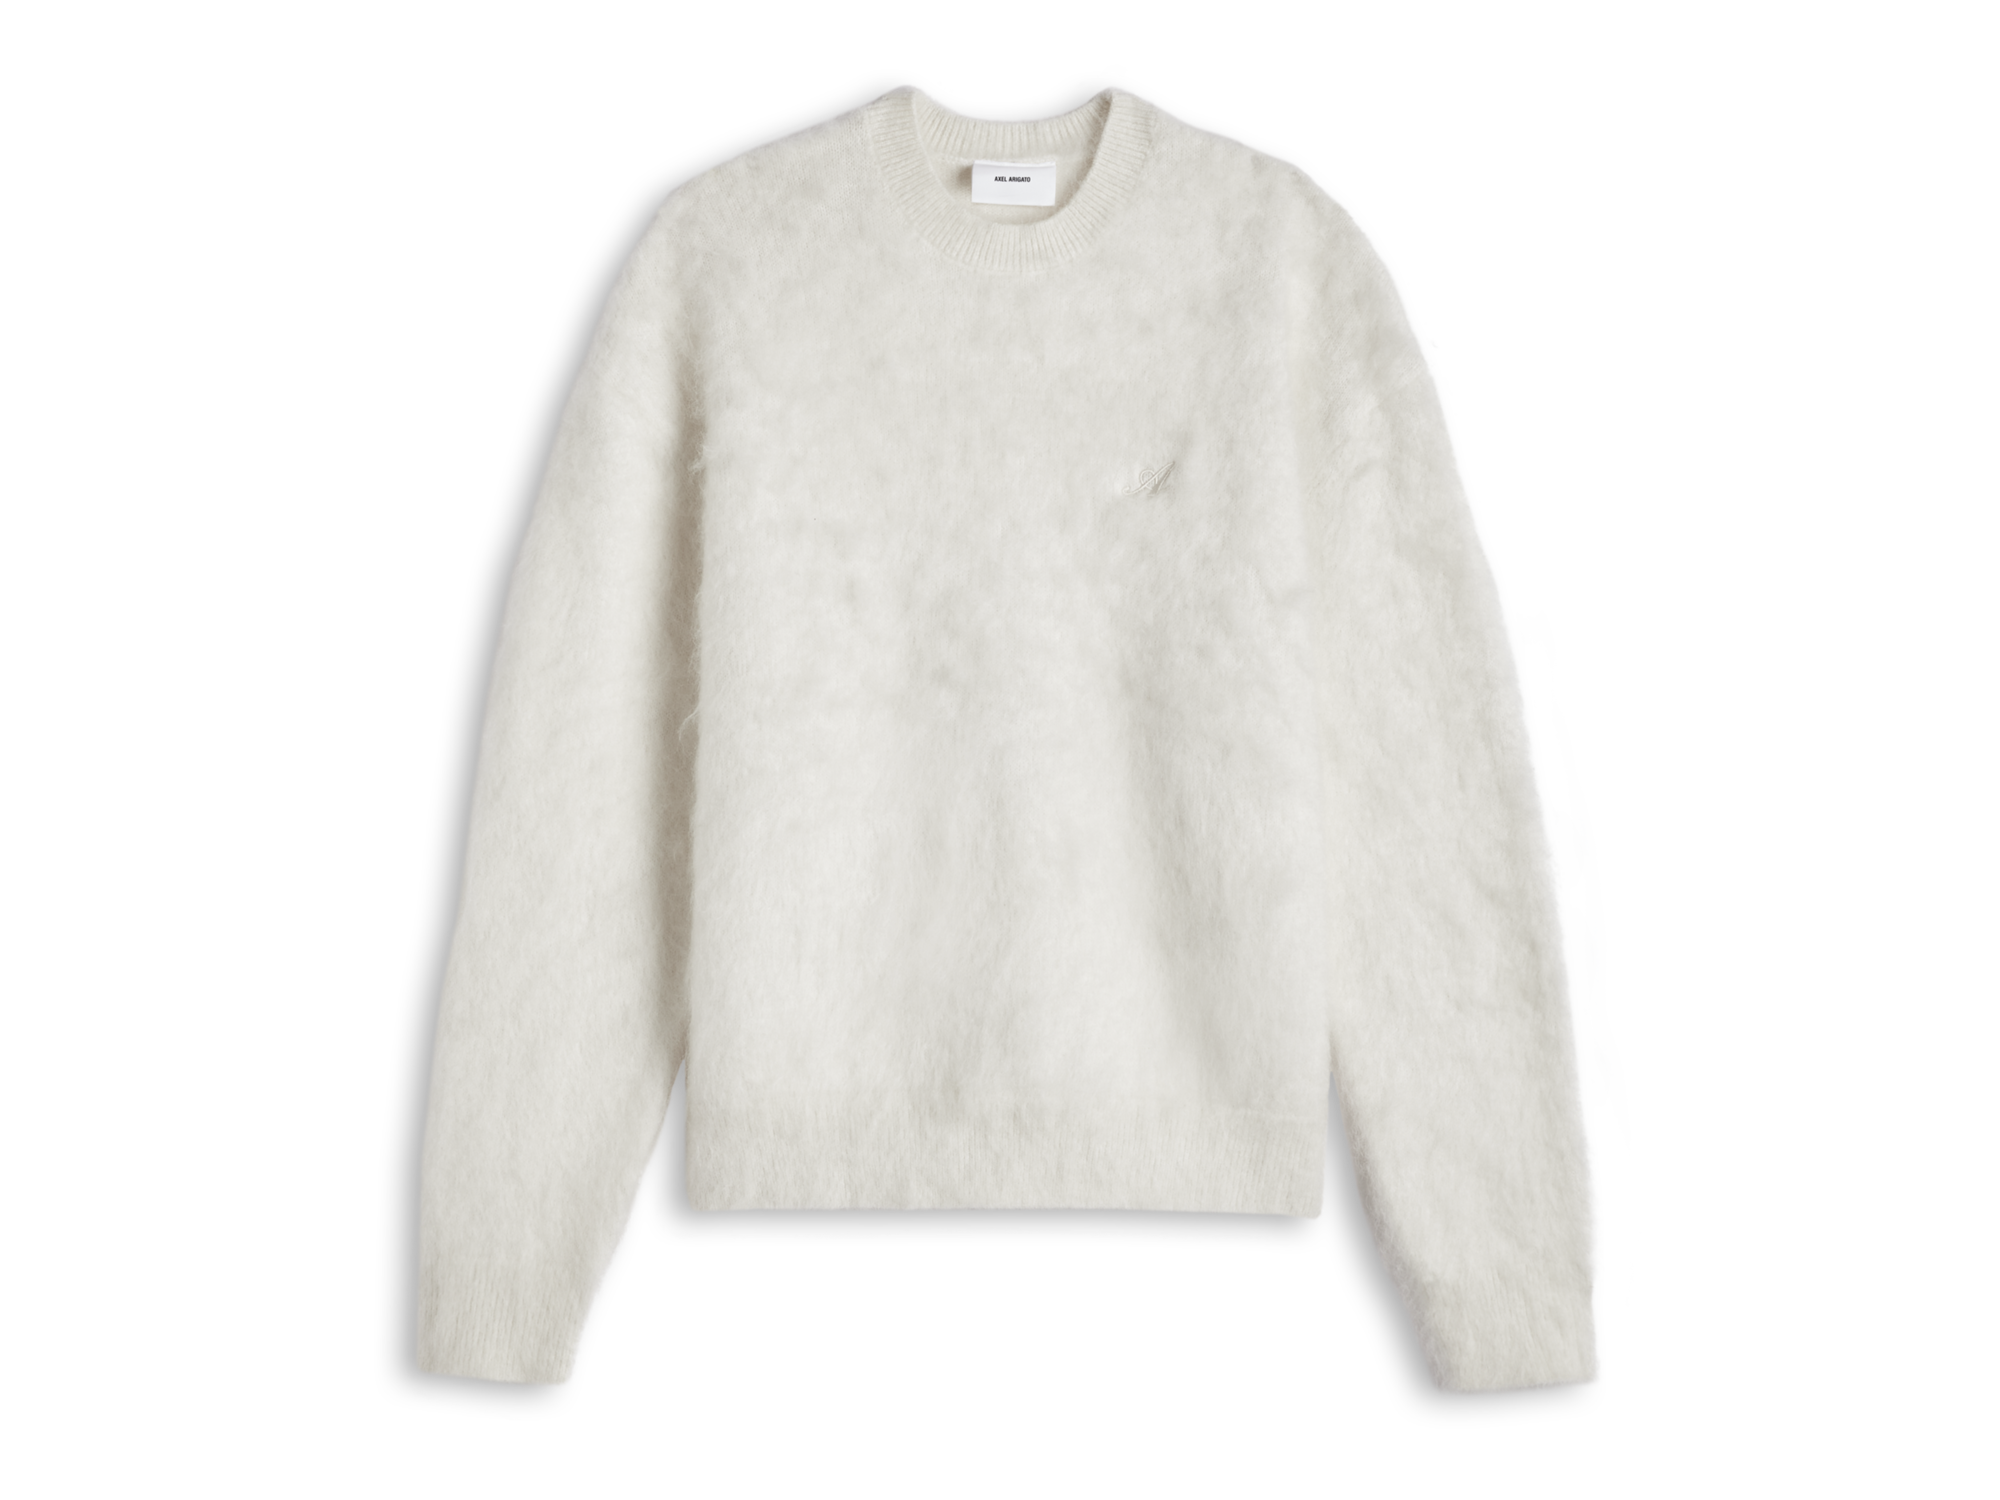 Primary Sweater